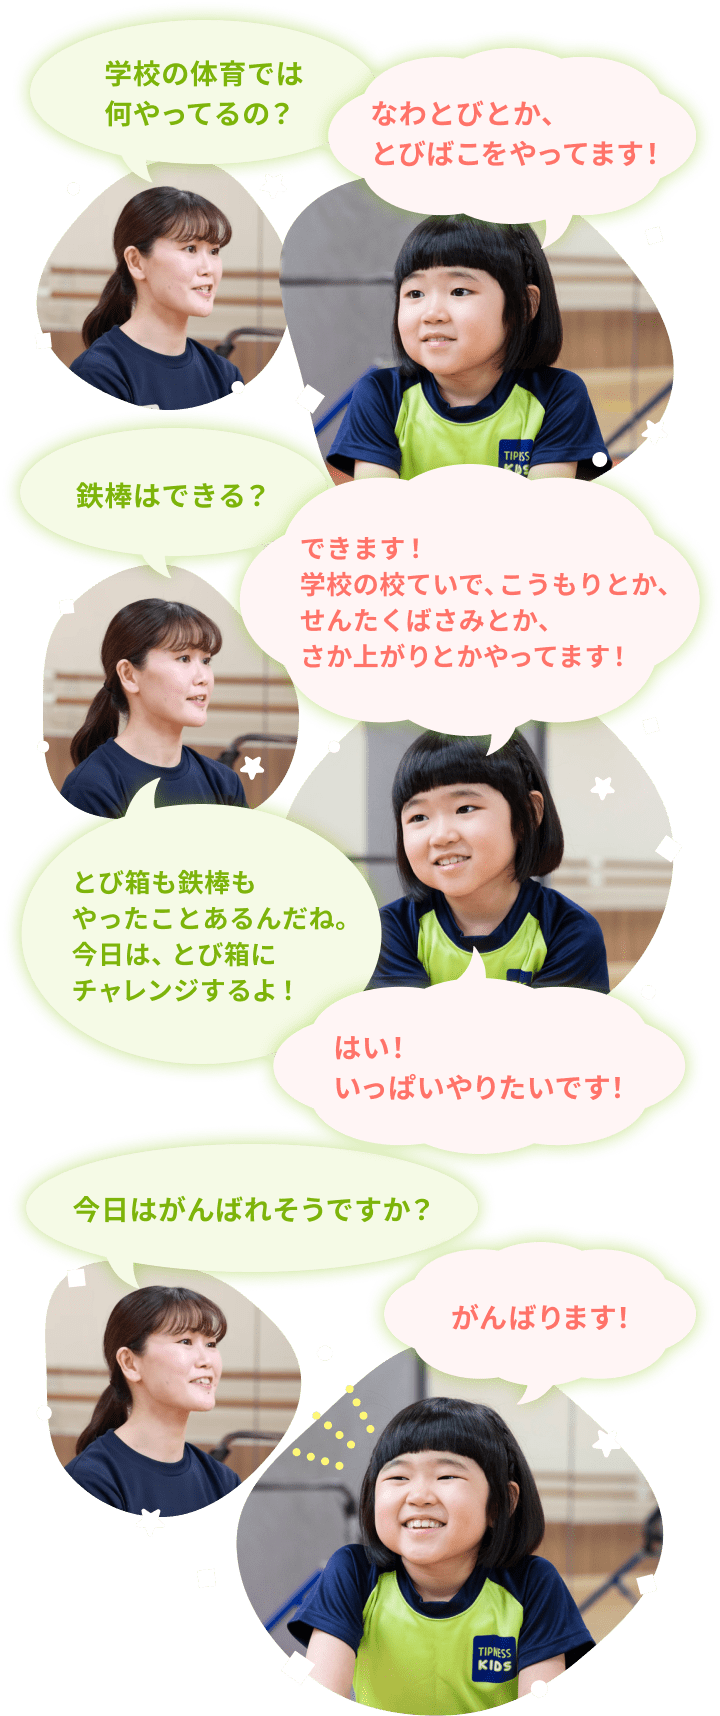 コーチと柚乃ちゃんの会話